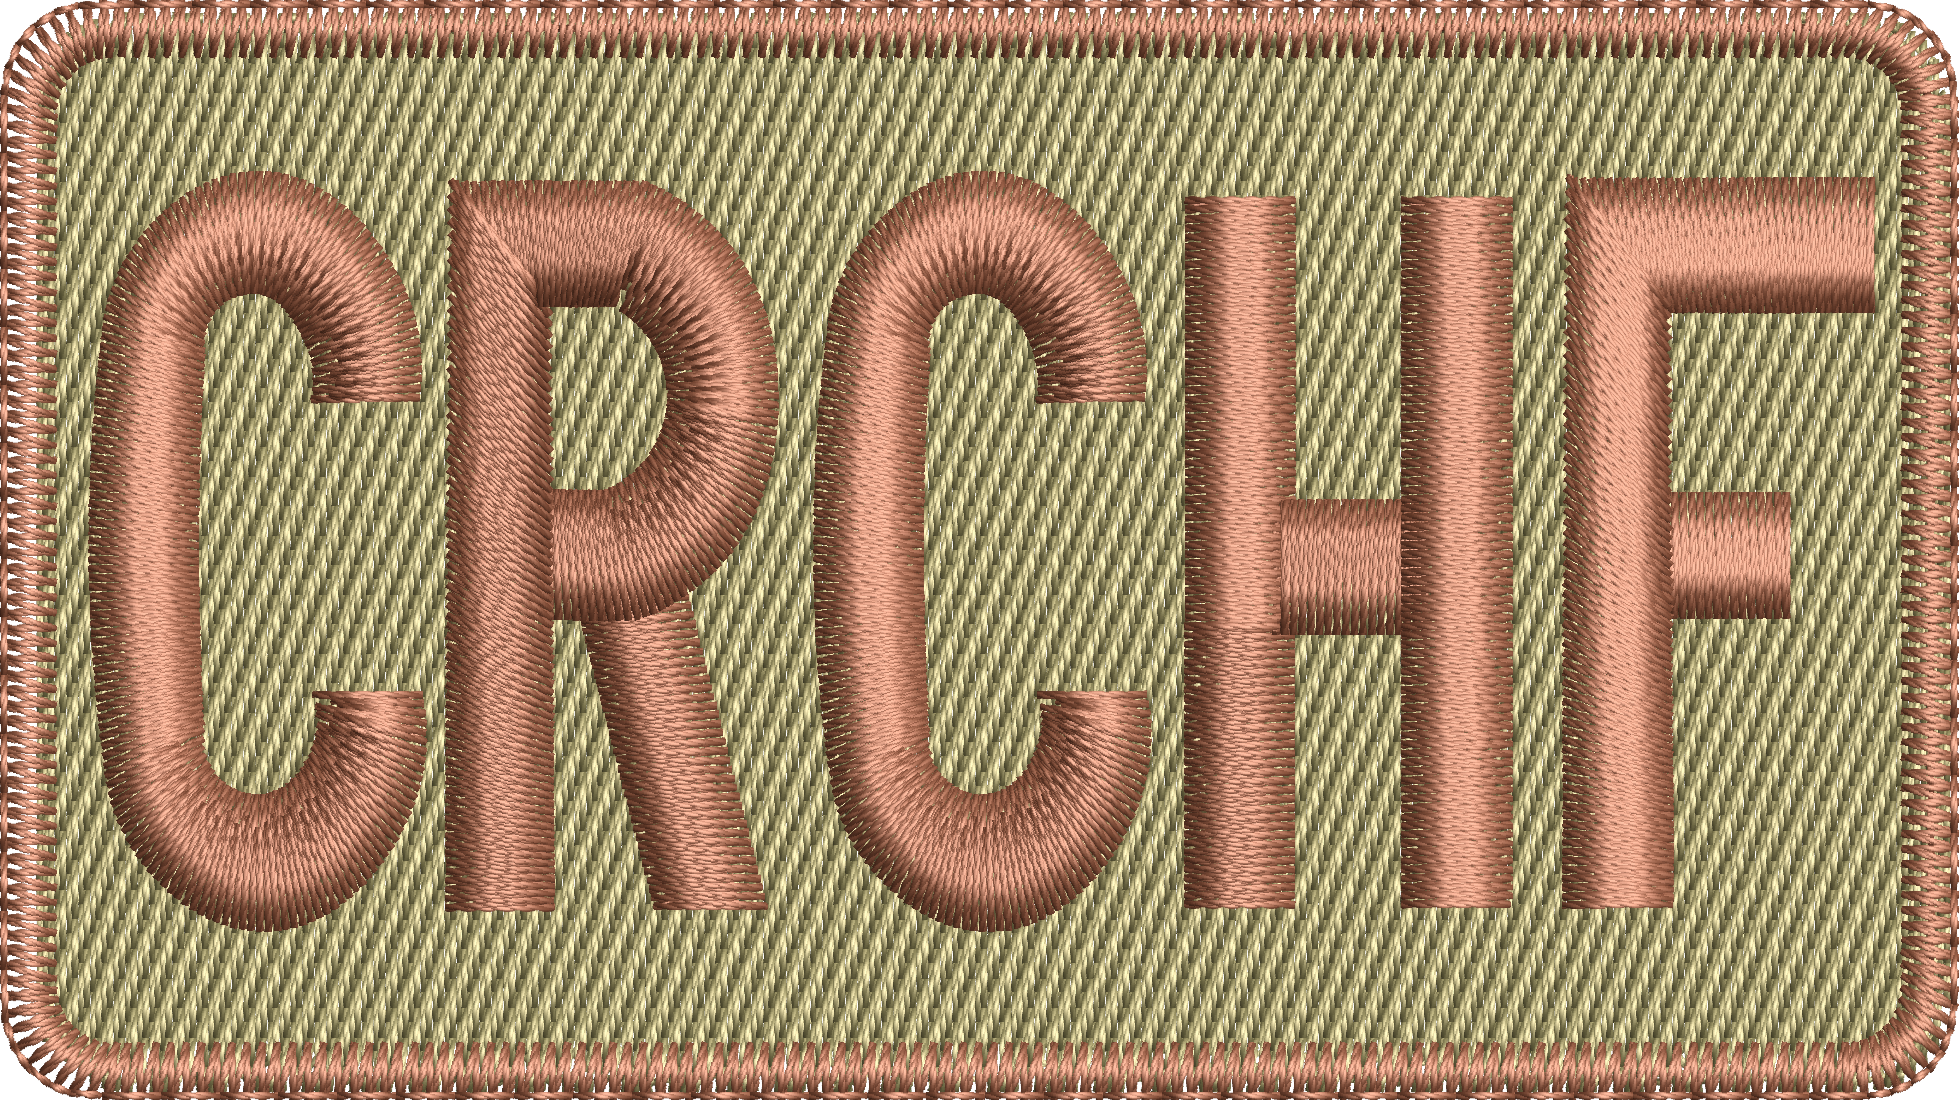 CRCHF Duty Identifier Patch